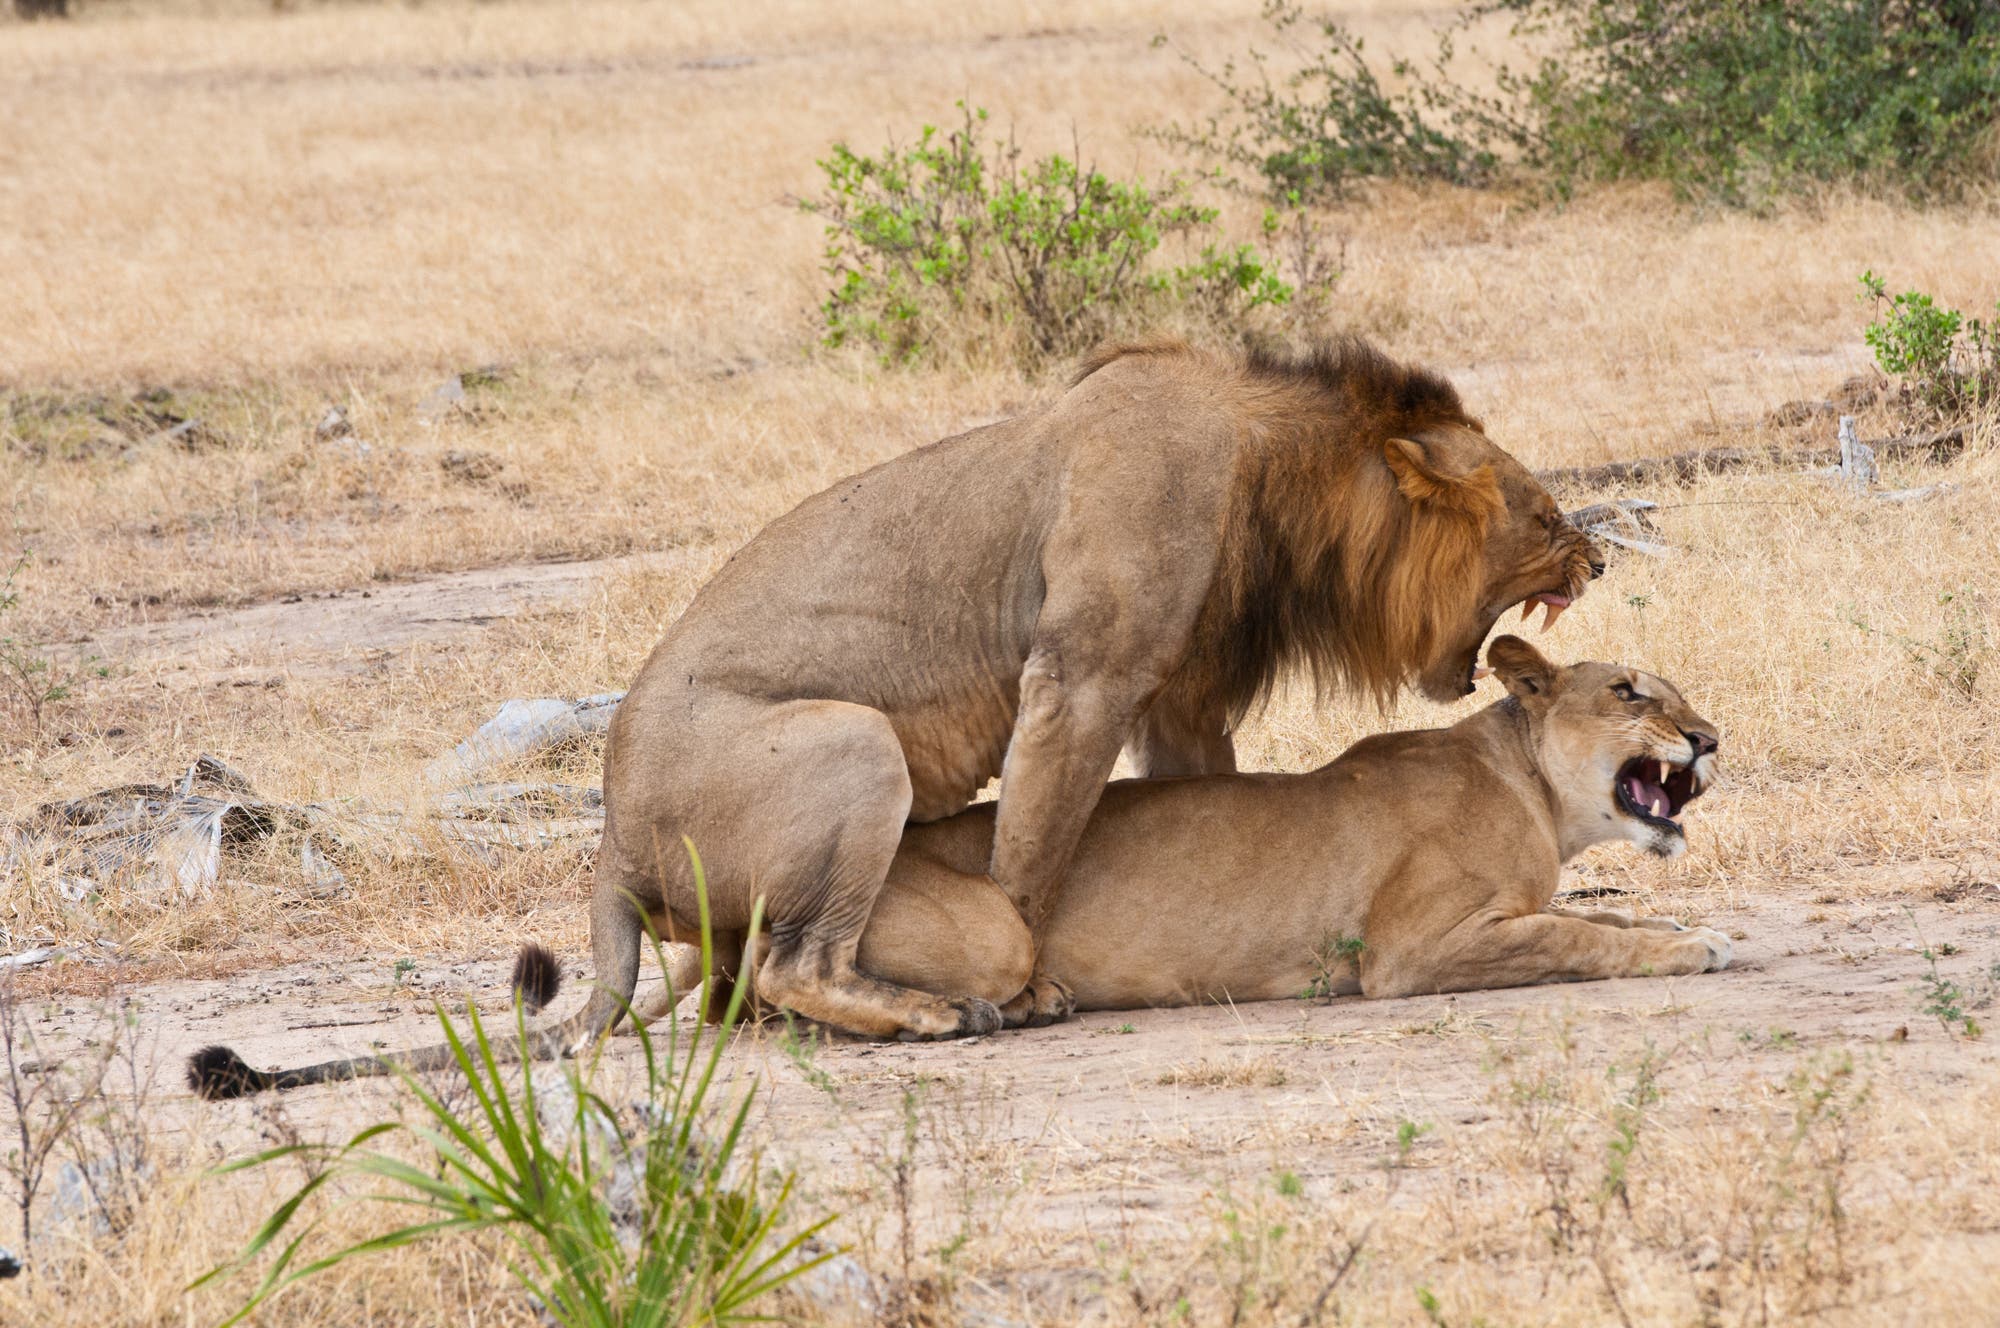 Löwen bei der Paarung